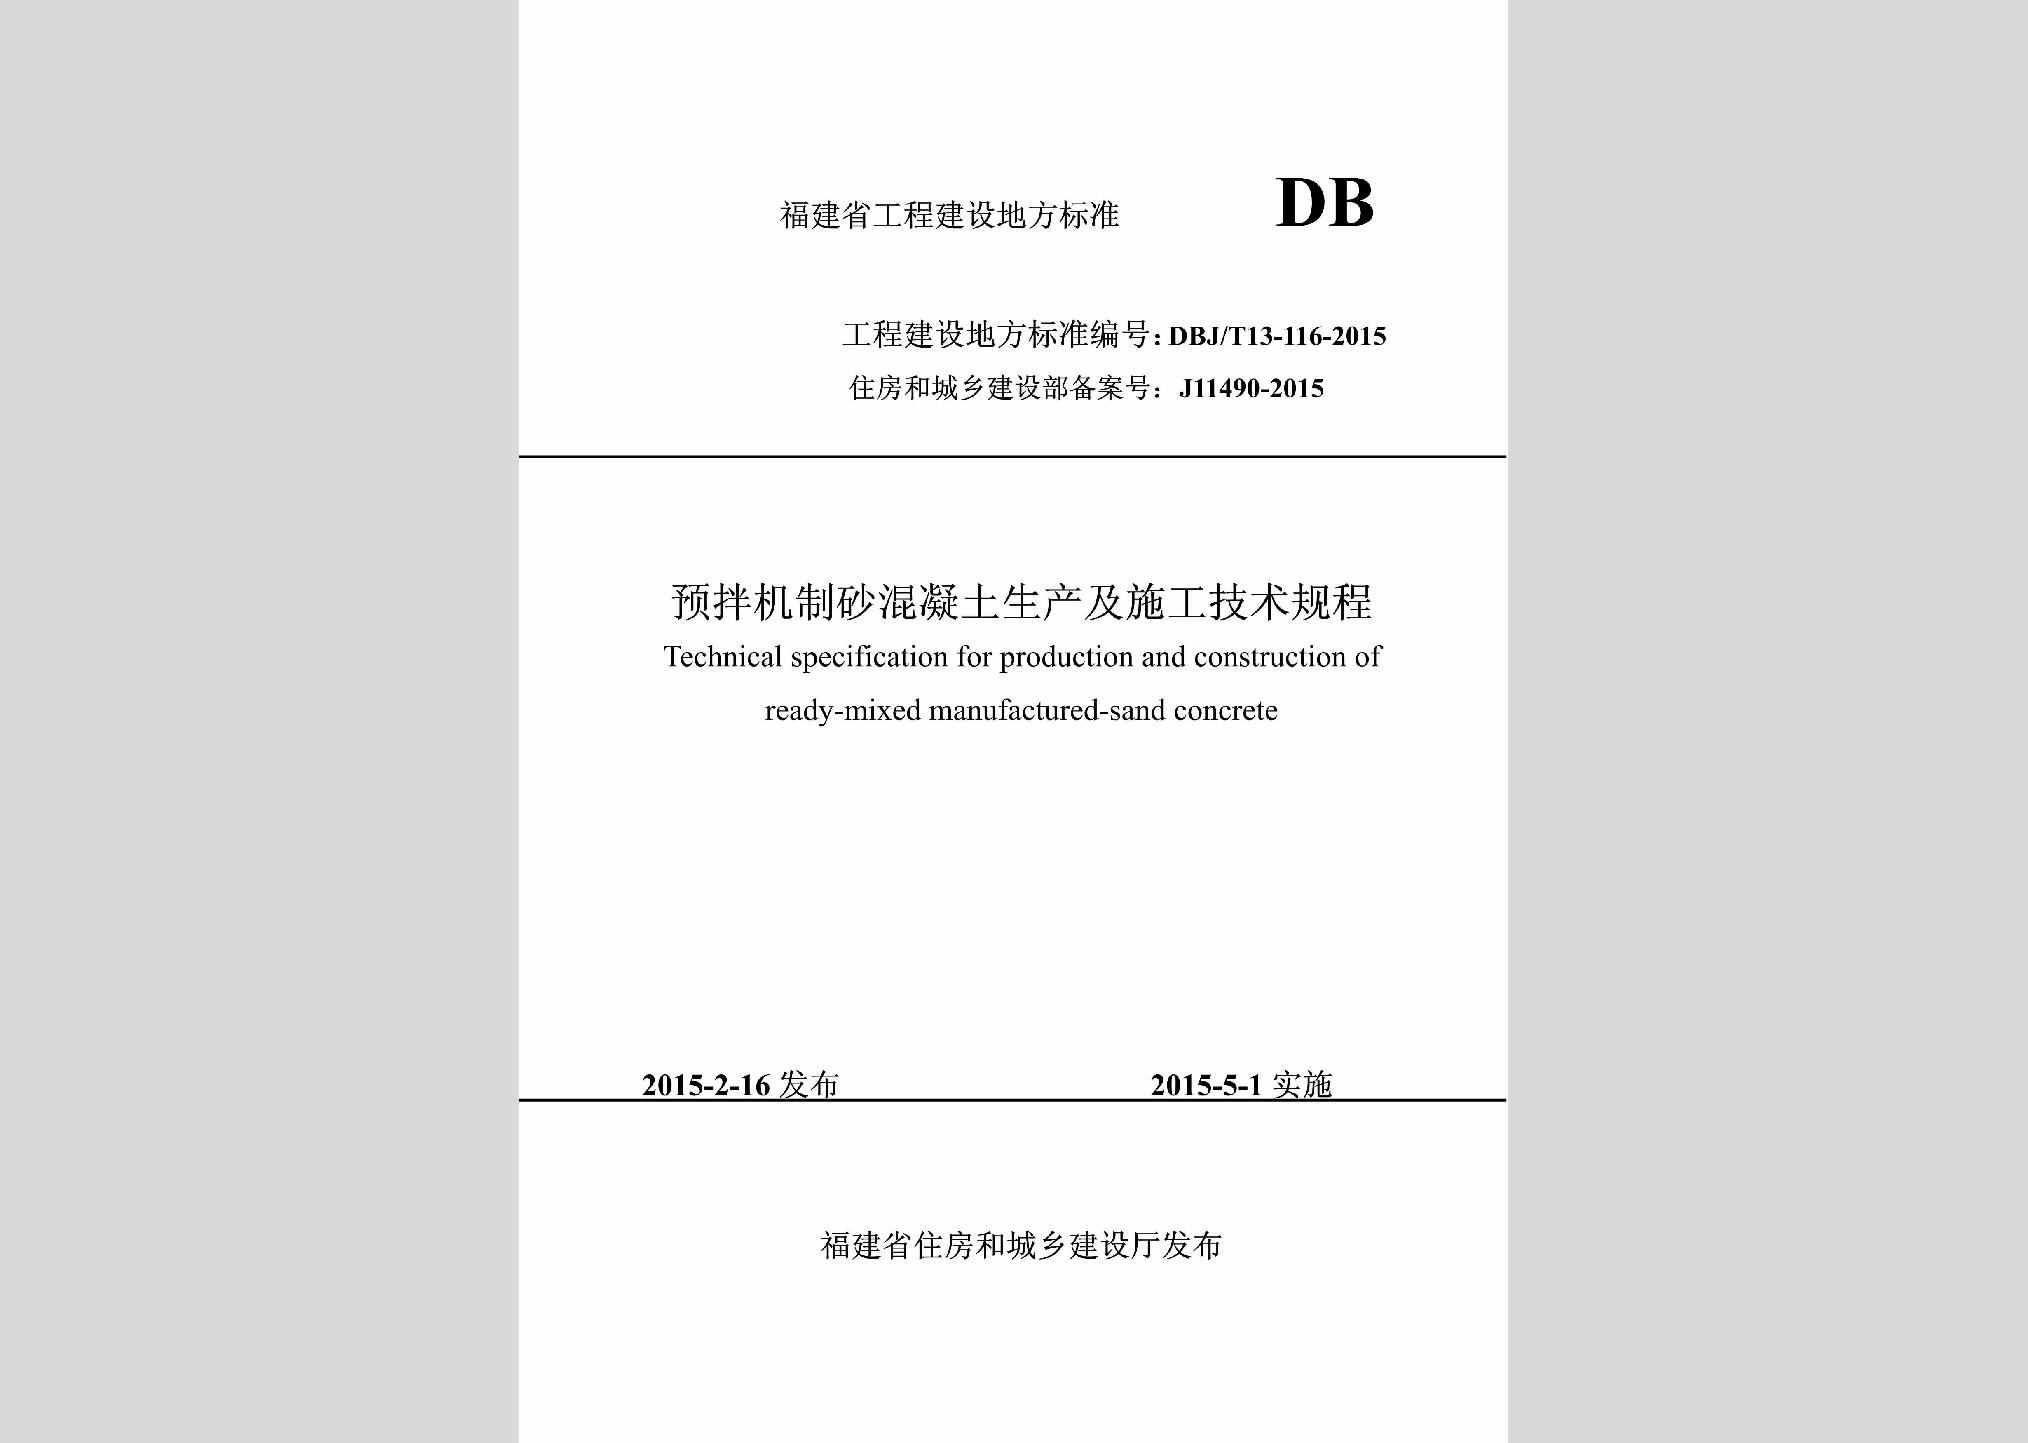 DBJ/T13-116-2015：预拌机制砂混凝土生产及施工技术规程